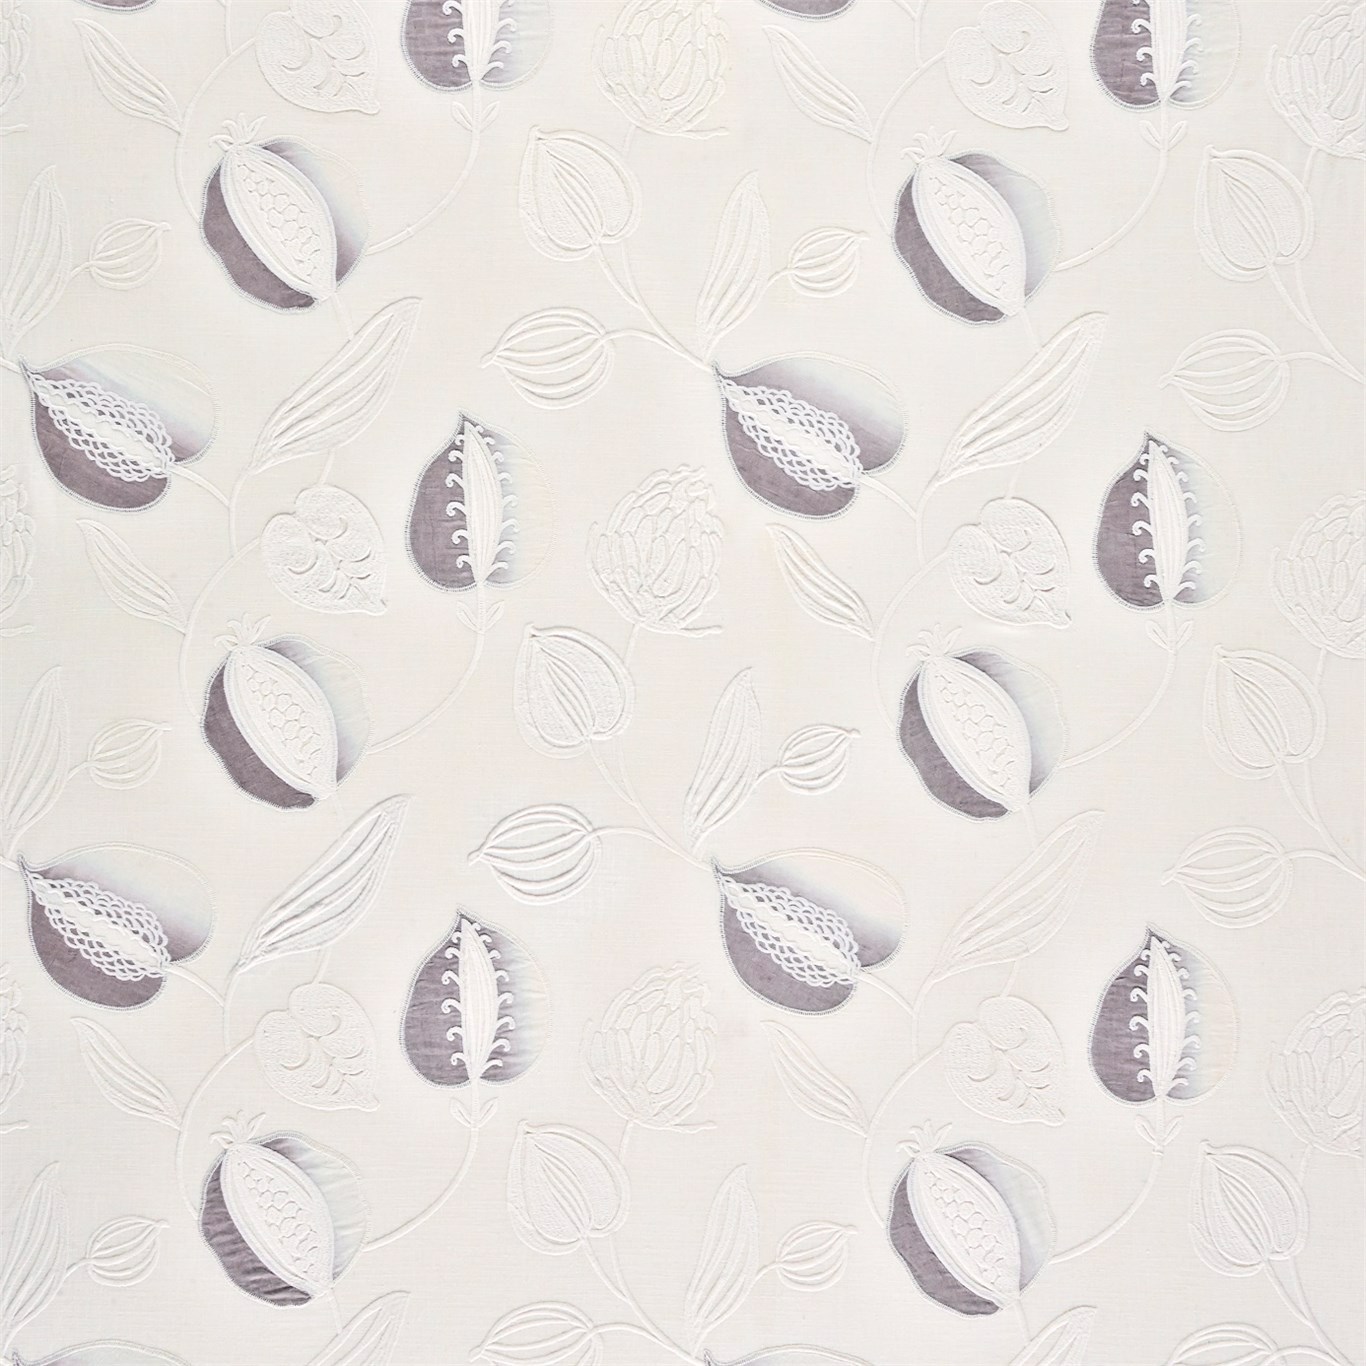 Abella French Grey Fabric by HAR